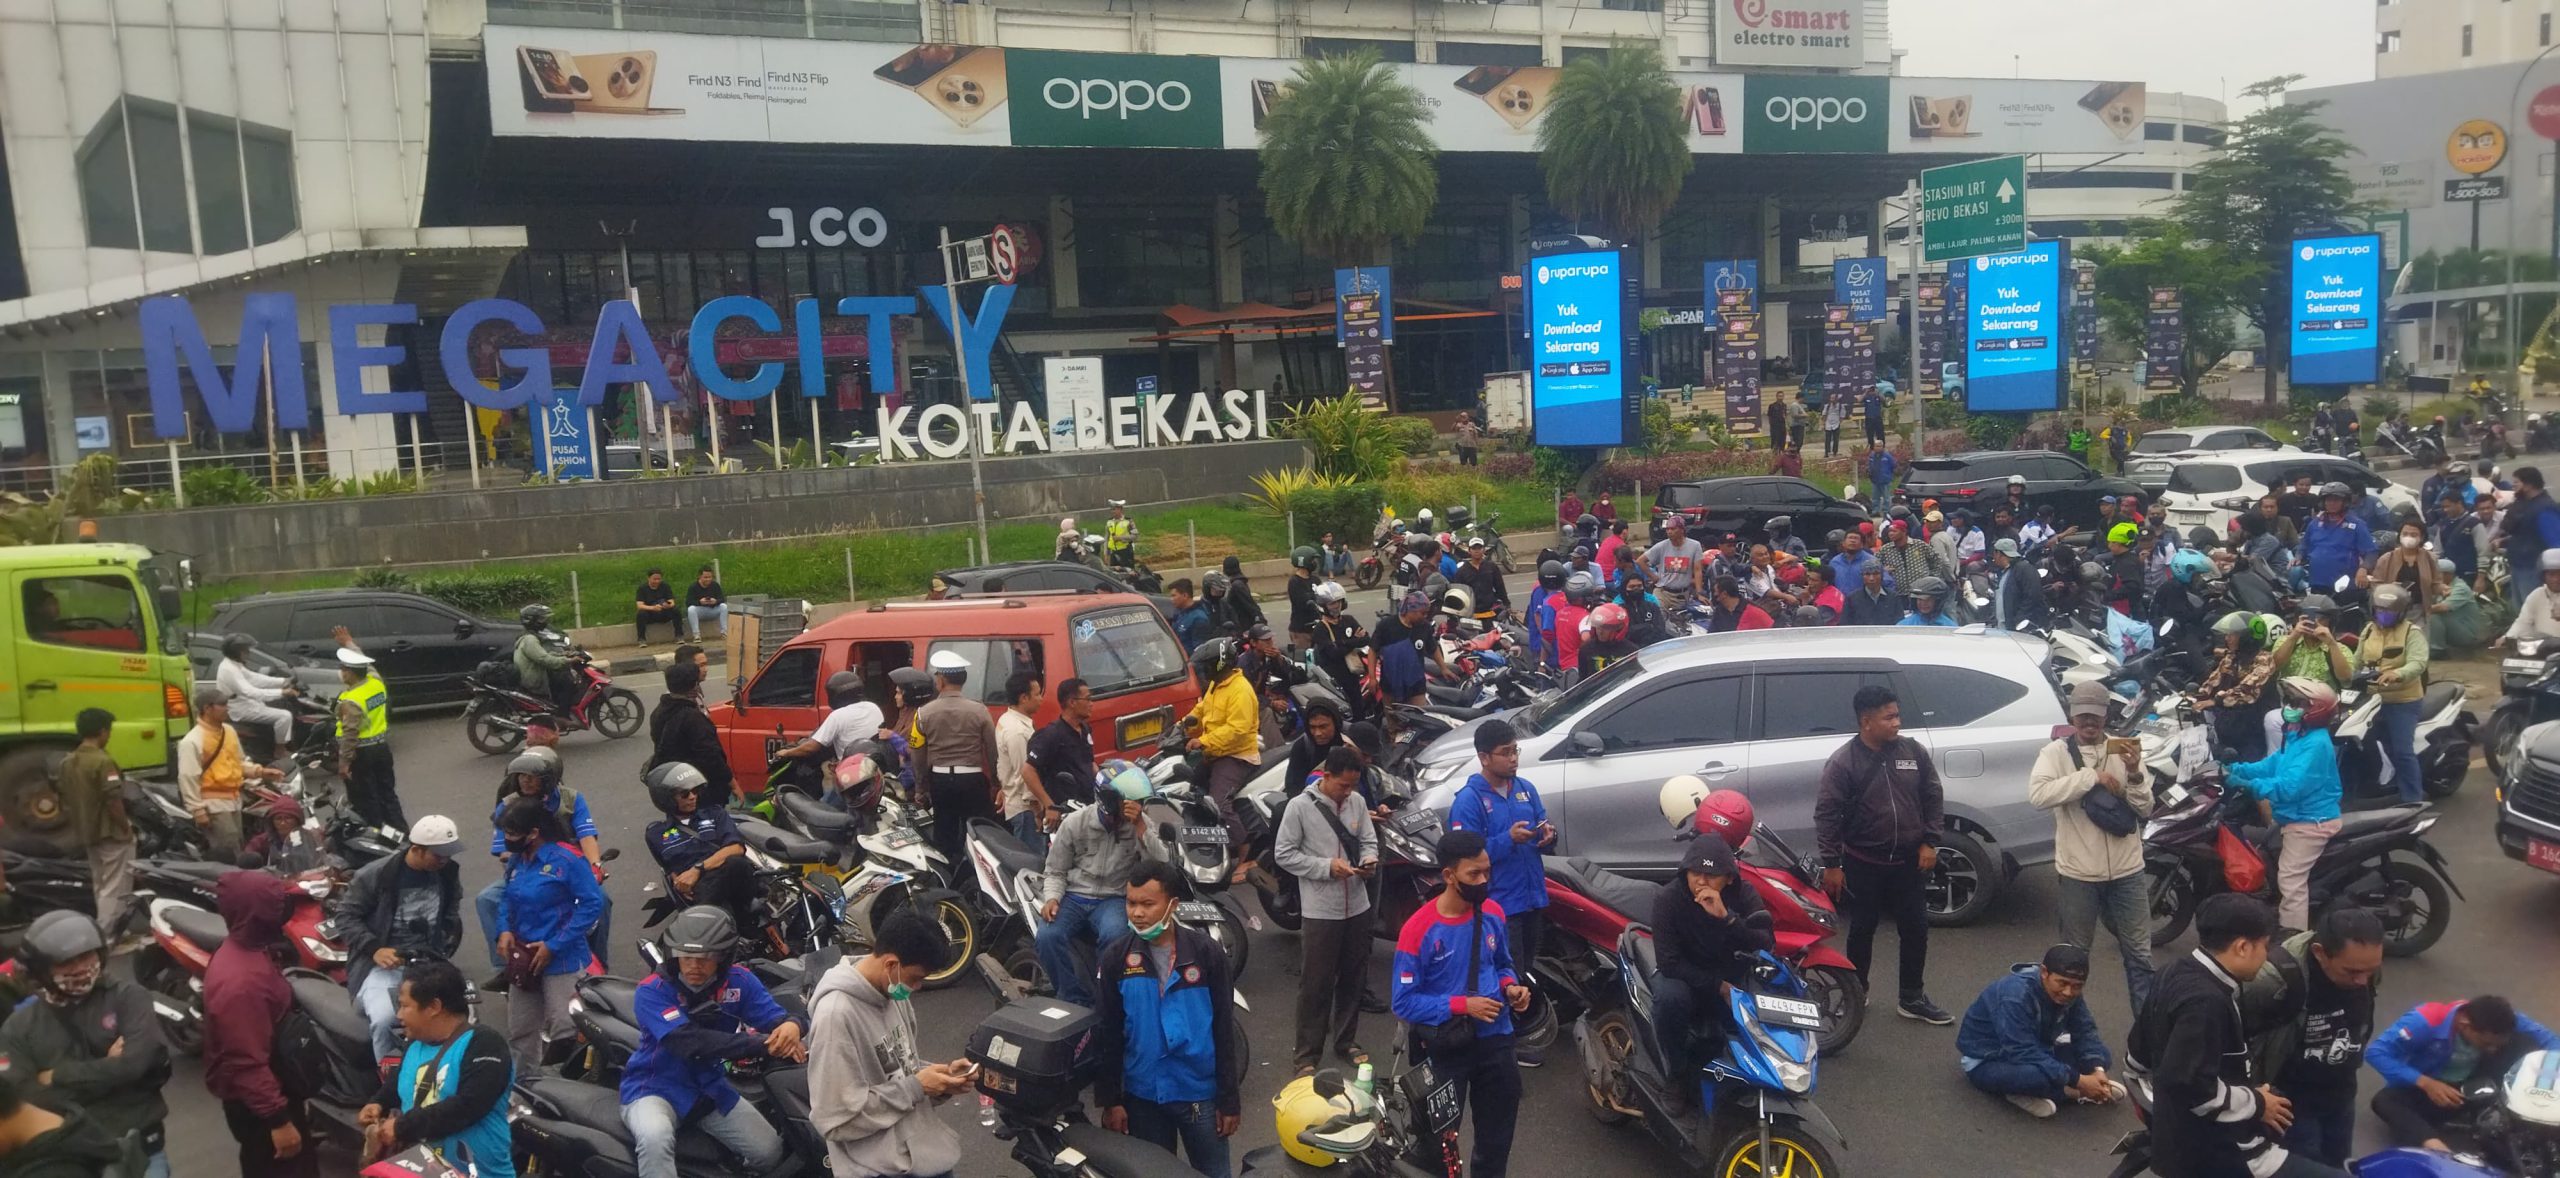 Hari Penentu Kenaikan UMK Jawa Barat, Ratusan Buruh Kota Bekasi Turun ke Jalan